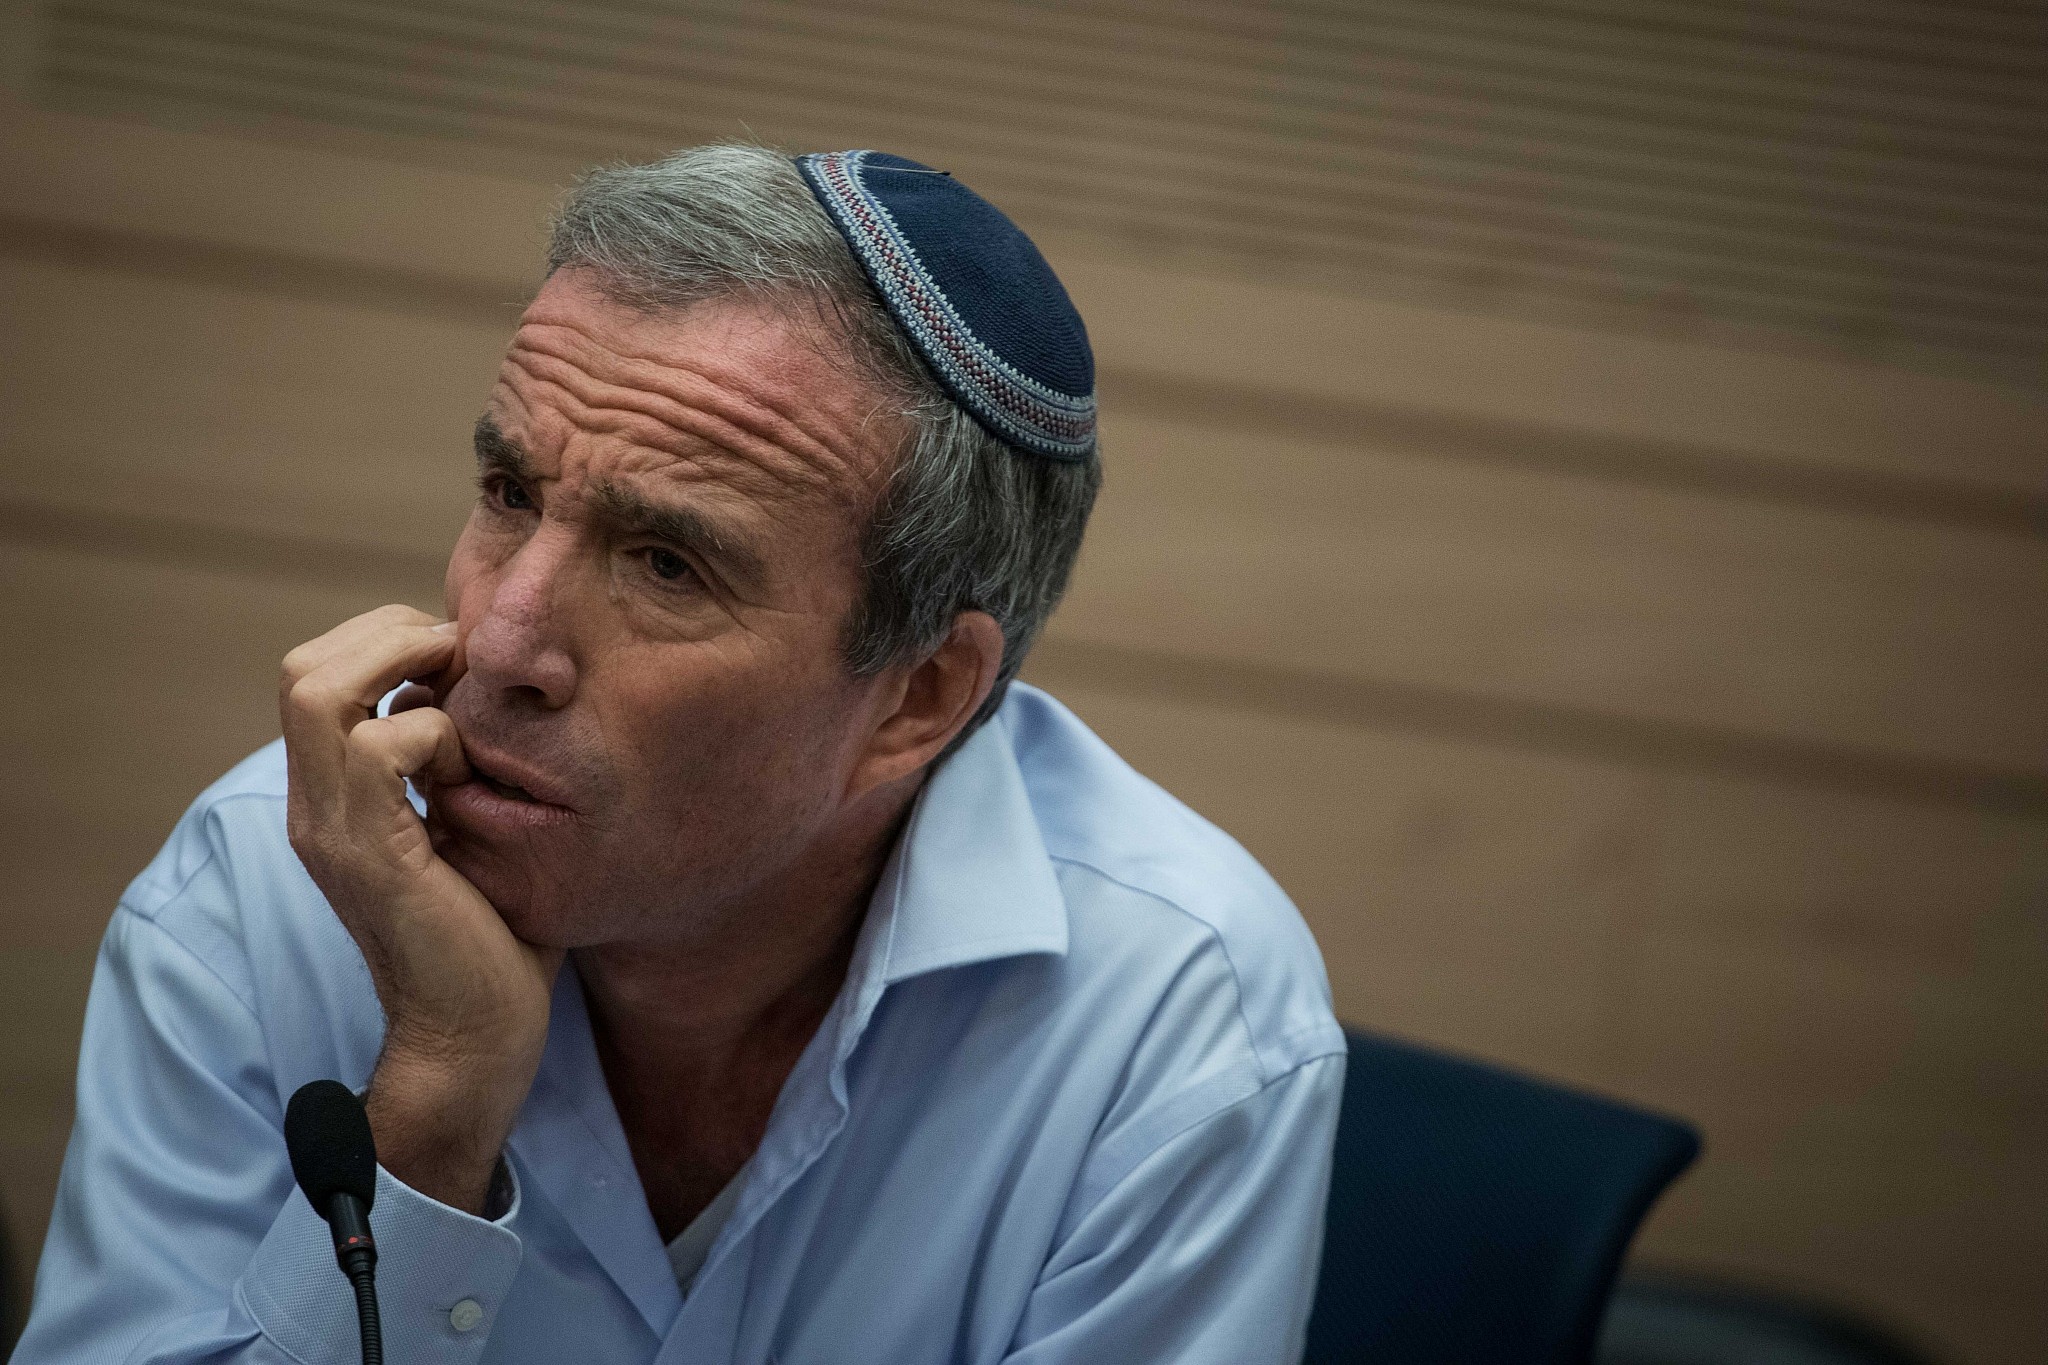 Knesset Member Elazar Stern. (Hadas Parush/Flash90)